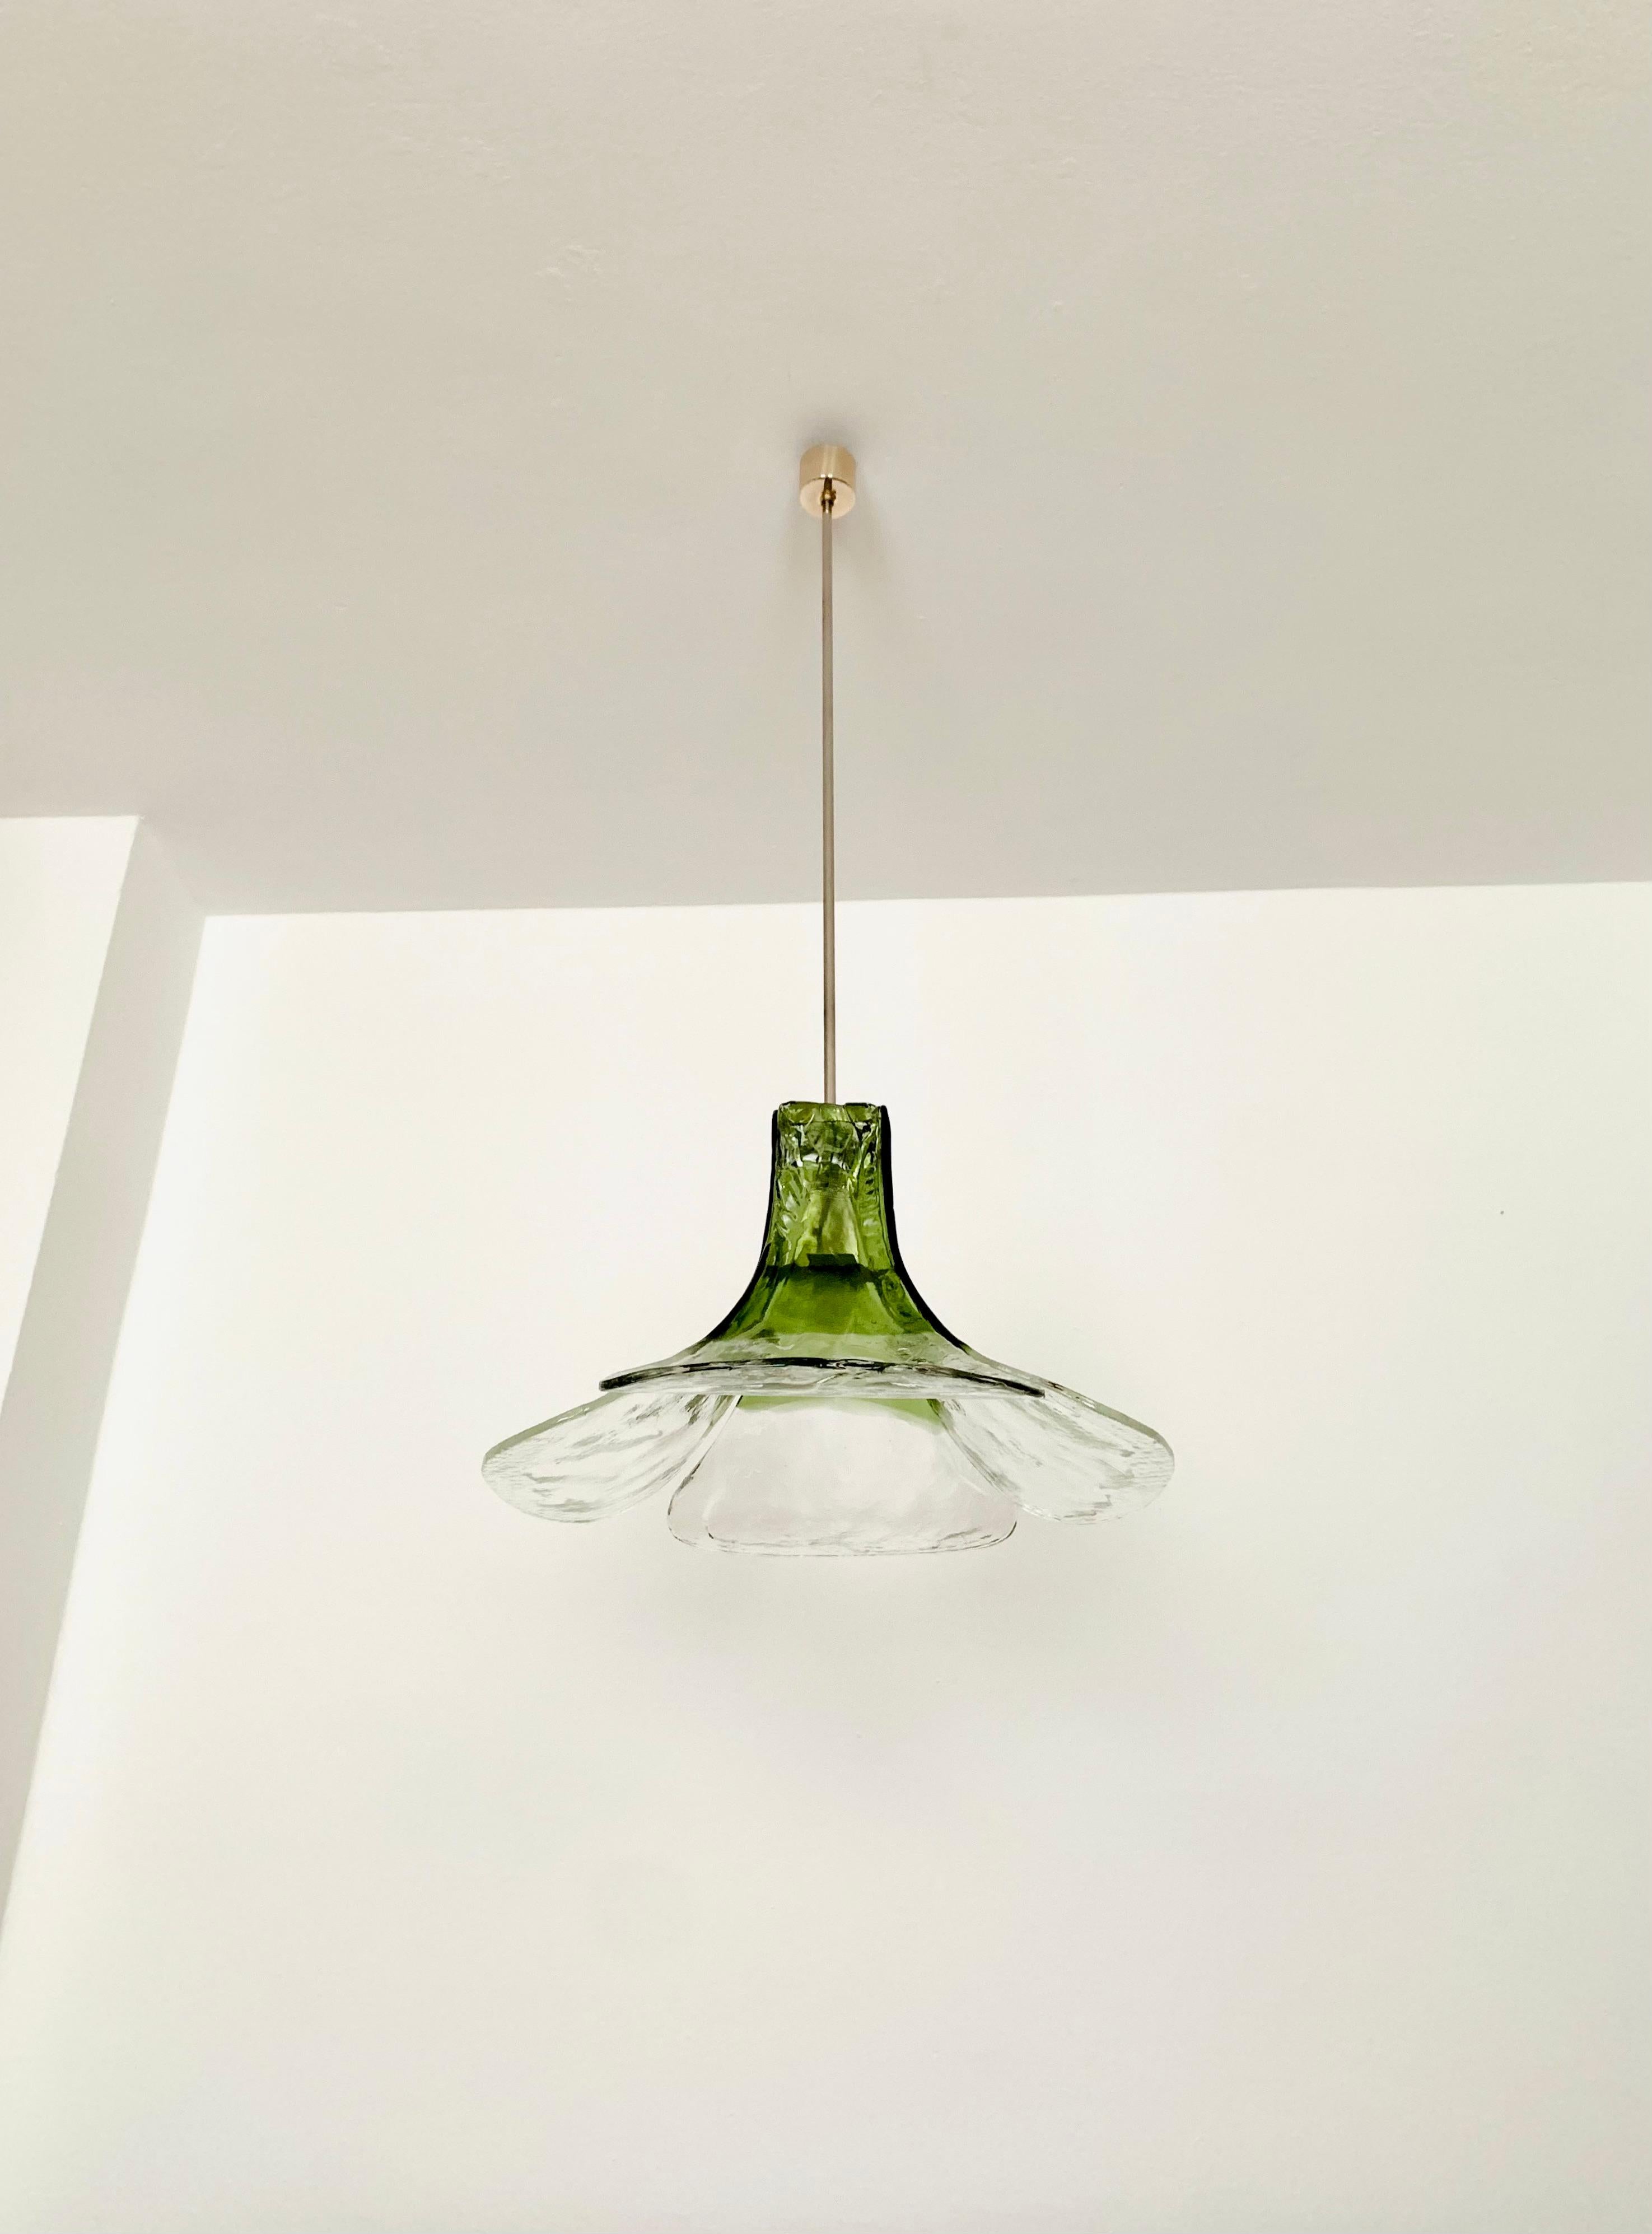 Très beau et grand plafonnier en verre de Murano des années 1960.
La lampe est très élégante.
La structure des verres crée une lumière très pétillante.
Un design fantastique et un atout pour n'importe quelle maison.

Fabricant :